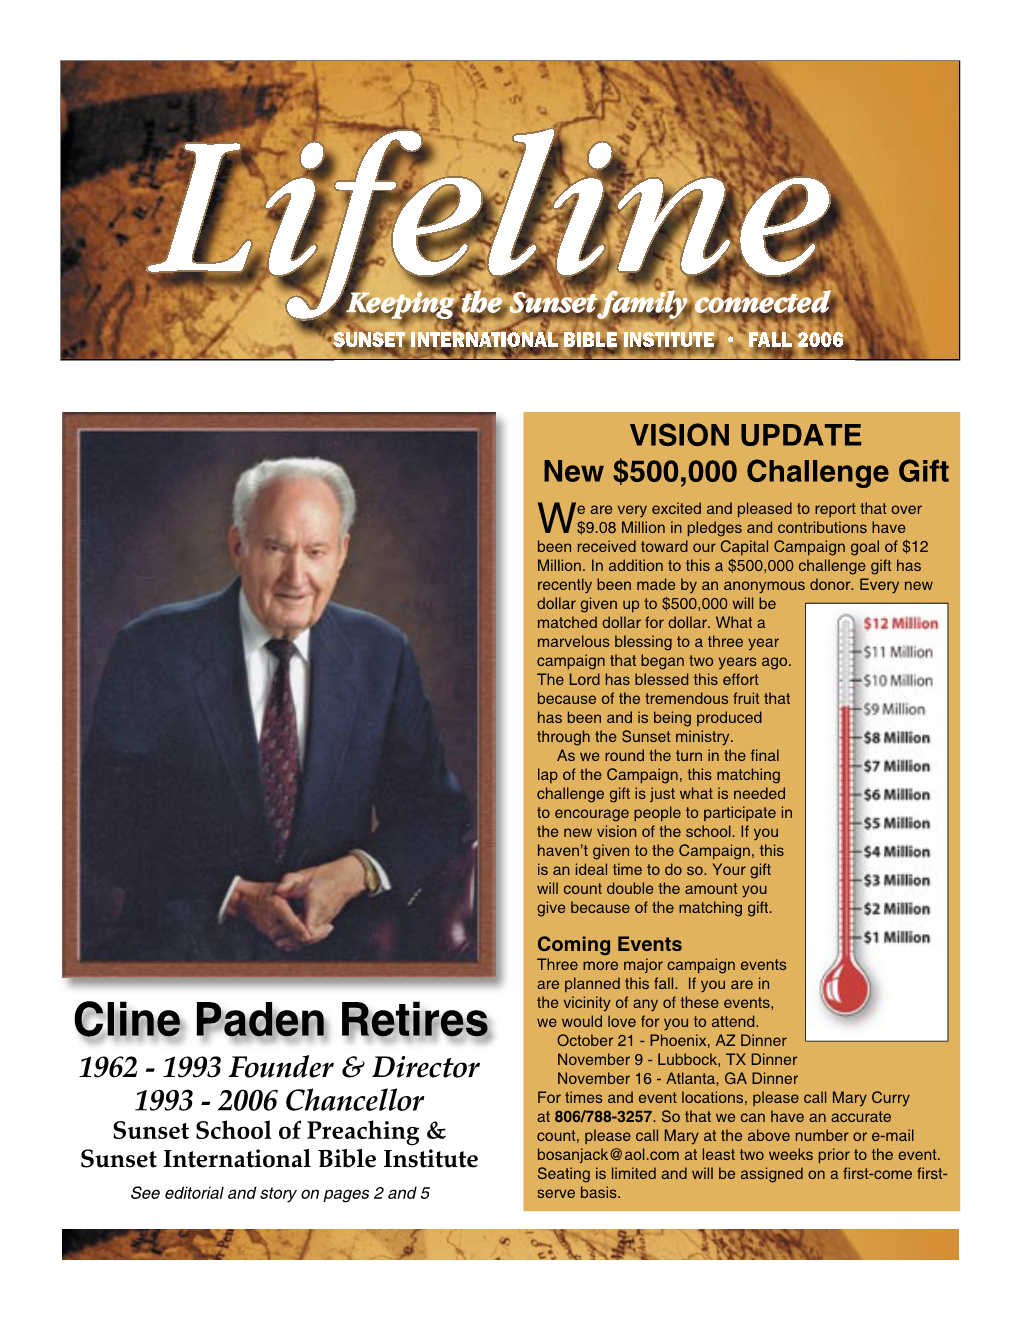 Cline Paden Retires